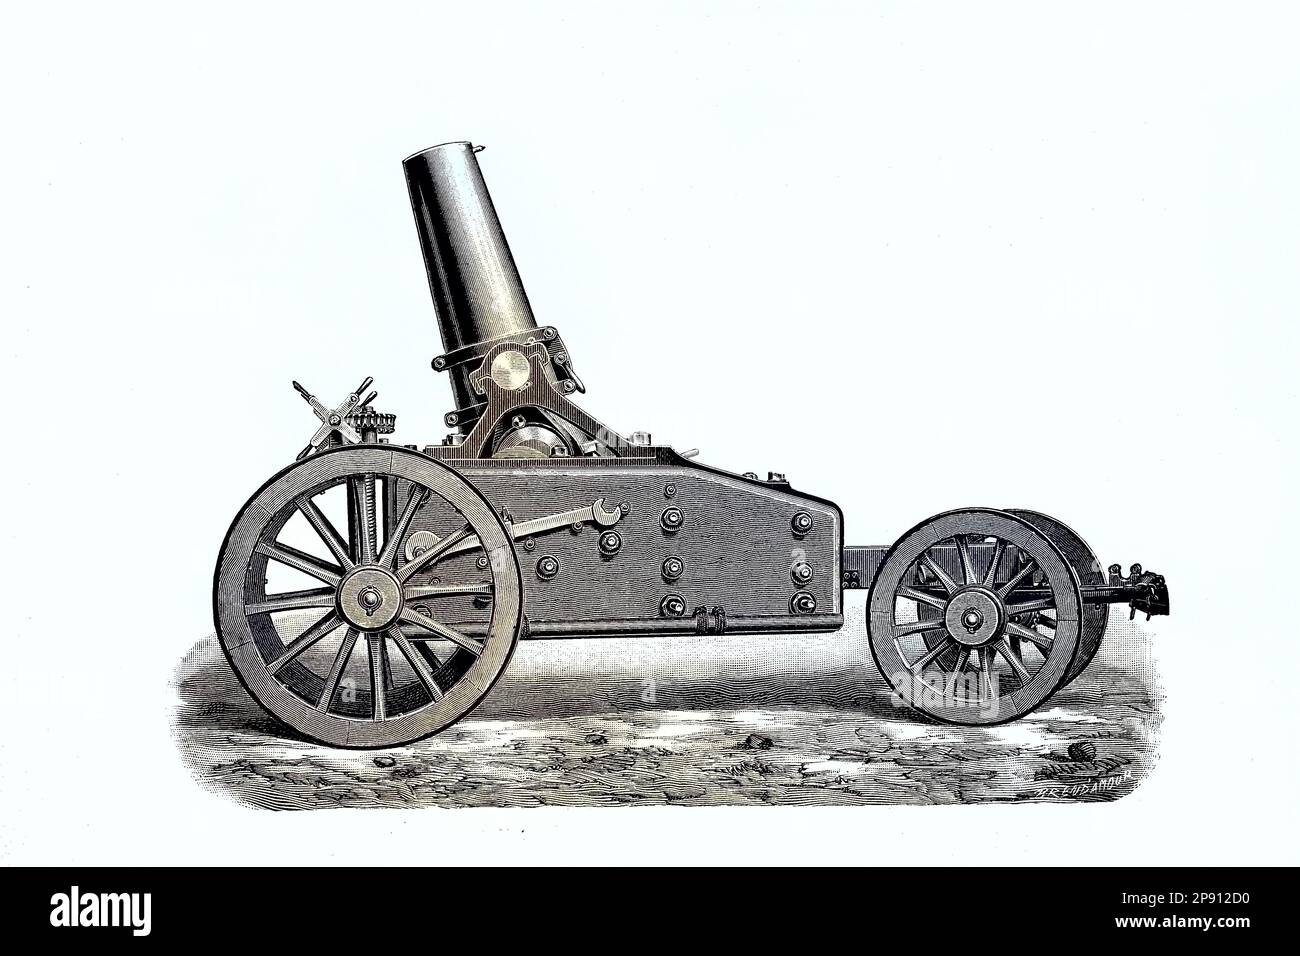 Die 21 cm Mörser 18 ist eine Haubitze, 1870, die im Deutsch-Französischen Krieg 1870 - 1871 eingesetzt wurde, Historisch, digital restaurierte Reproduktion von einer Vorlage aus dem 19. Jahrhundert Stock Photo